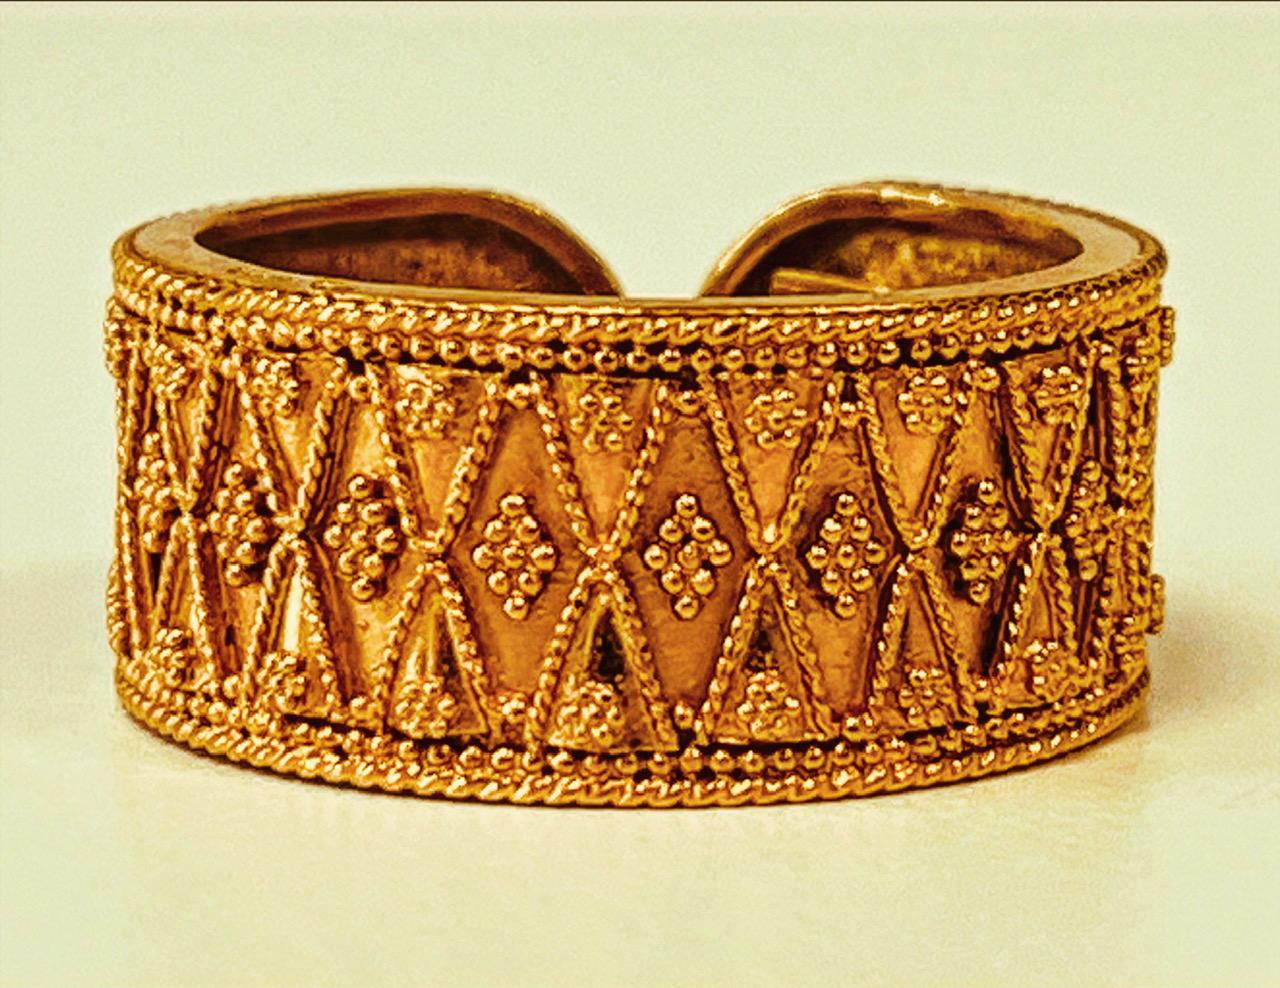 Offener Ring aus hochkarätigem Gold (20-22 K) von ILIAS LALAOUNIS, mit feiner Granulierung im hellenistischen Stil. 11 mm (1,1 cm) breit. Dieser handgefertigte Ring wurde nach einer alten griechischen Technik hergestellt. Gesamtgewicht: 10,5 Gramm.